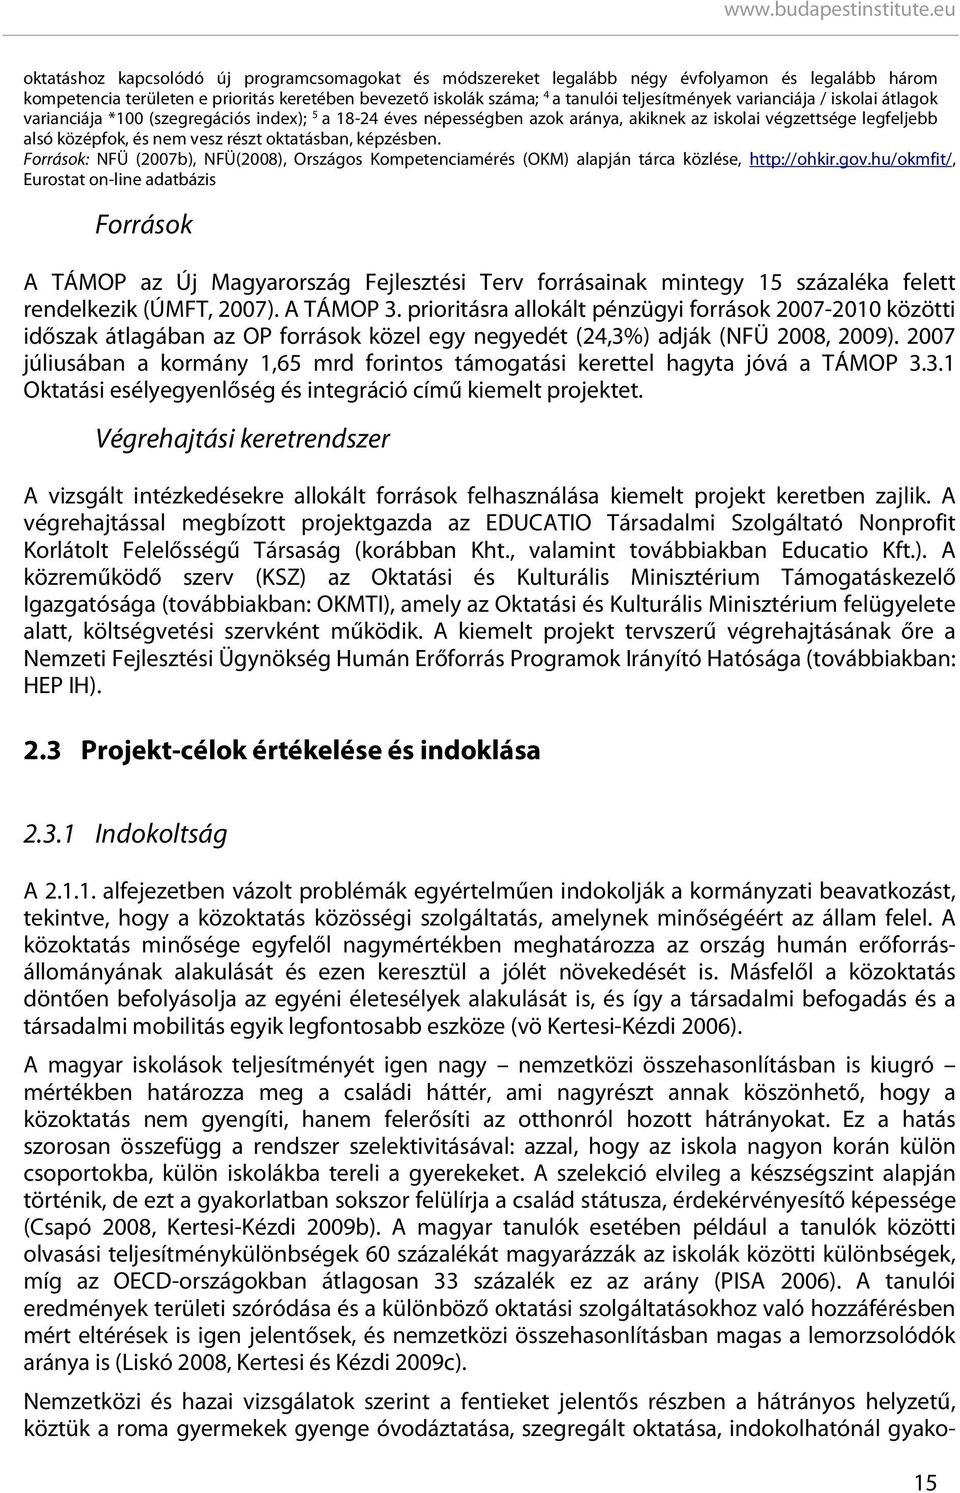 képzésben. Források: NFÜ (2007b), NFÜ(2008), Országos Kompetenciamérés (OKM) alapján tárca közlése, http://ohkir.gov.